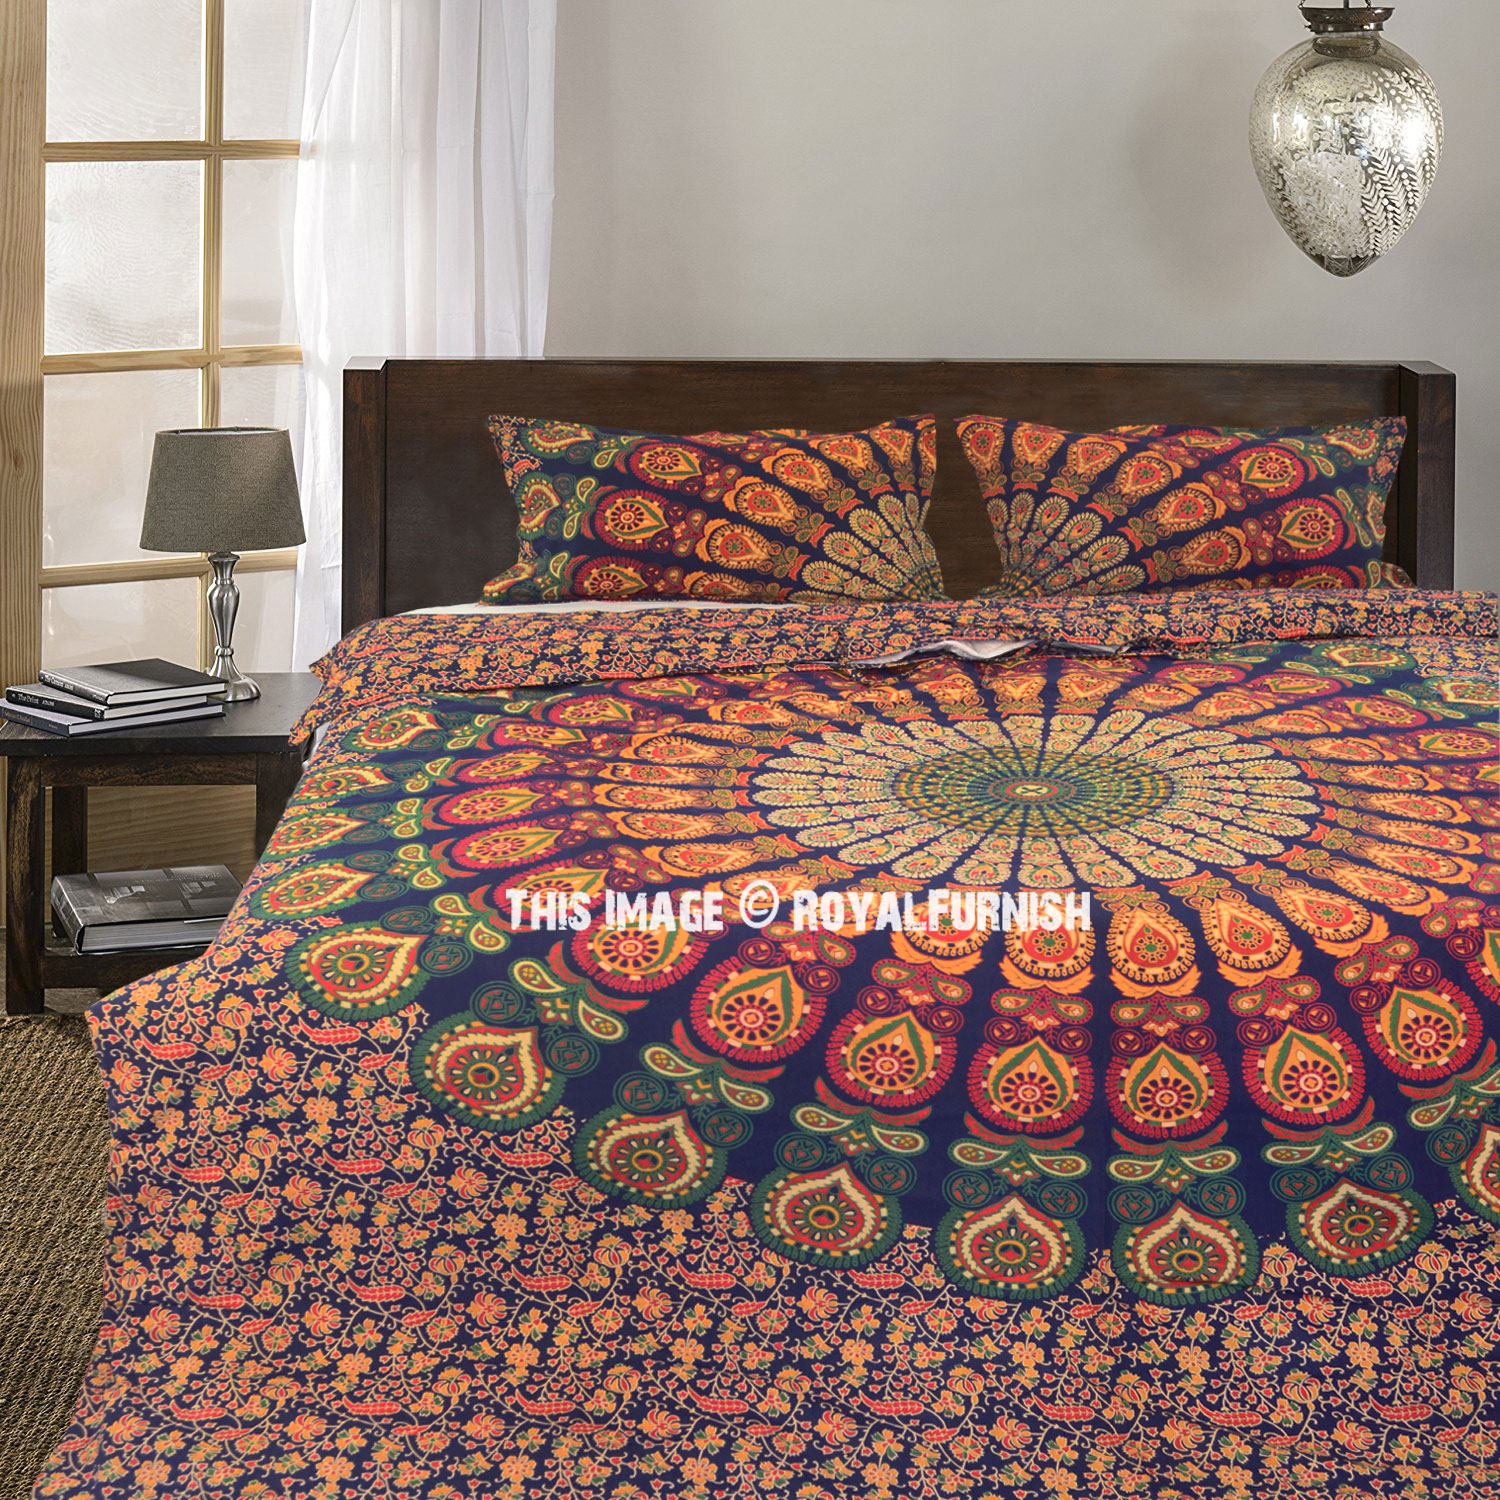 Bohomian Ombre Bed Quilt Cover Queen Mandala Duvet Doona Cover Comforter Brand 